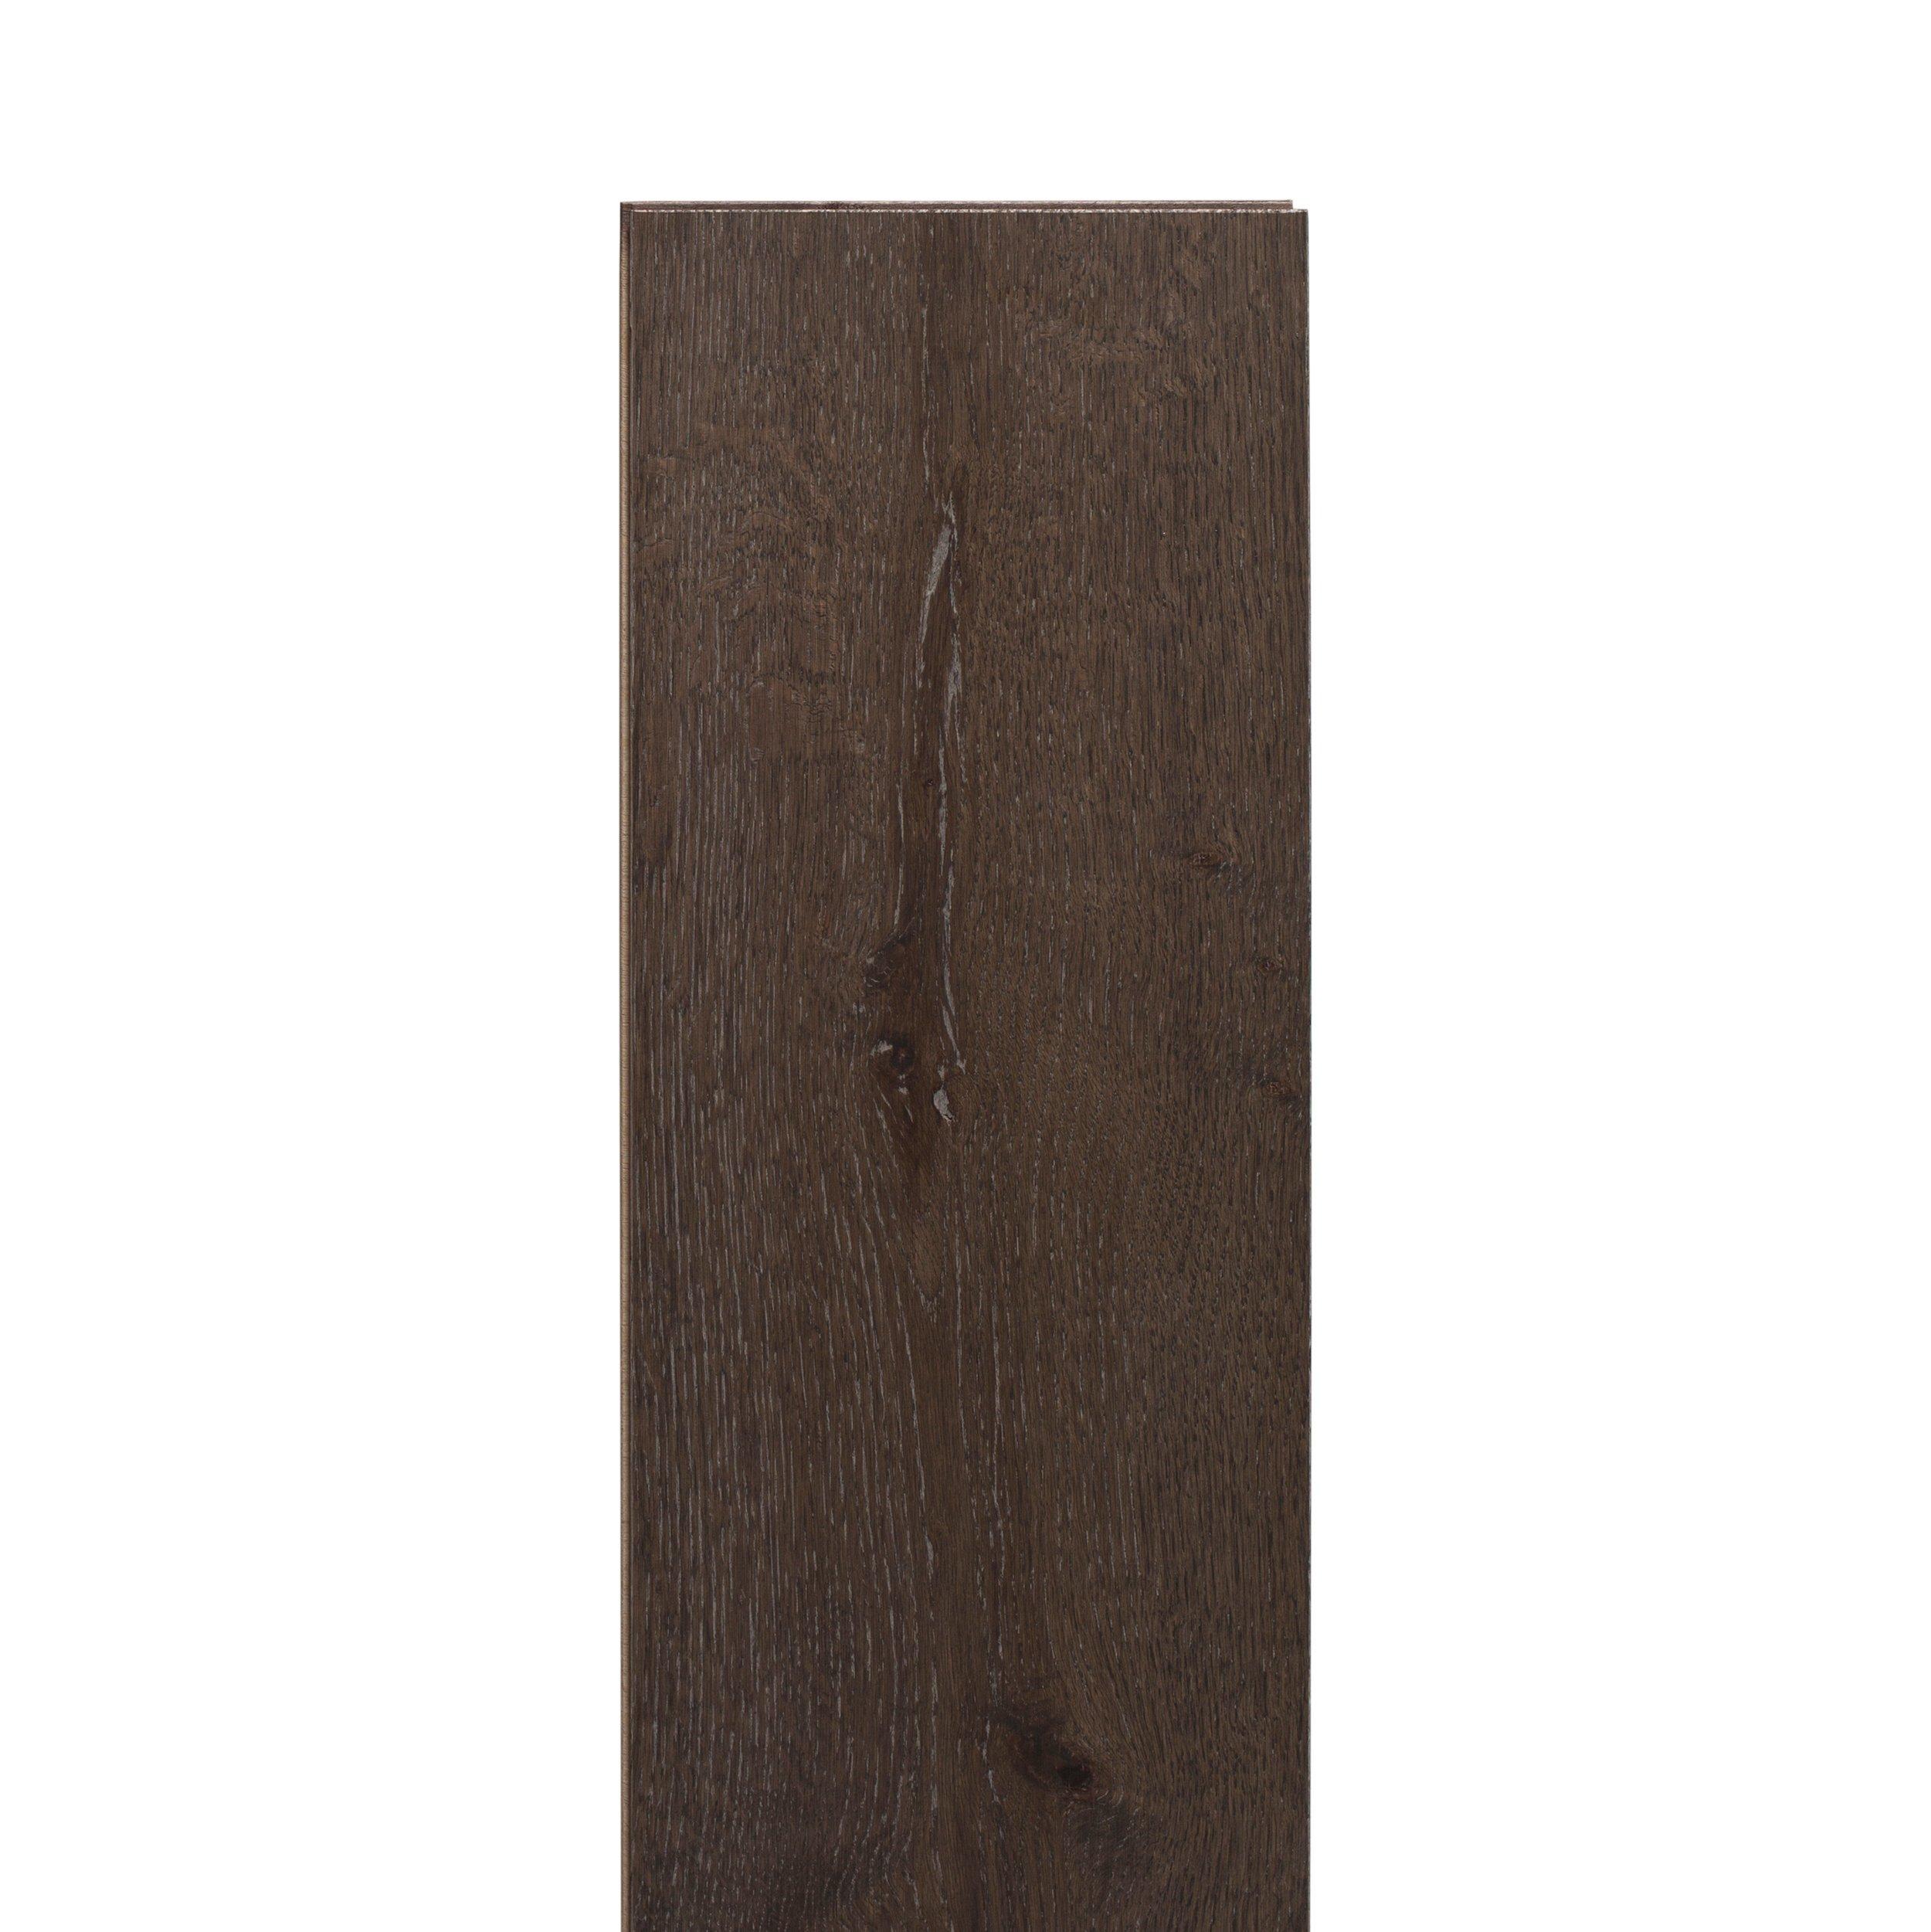 Noland White Oak Wire-Brushed Engineered Hardwood